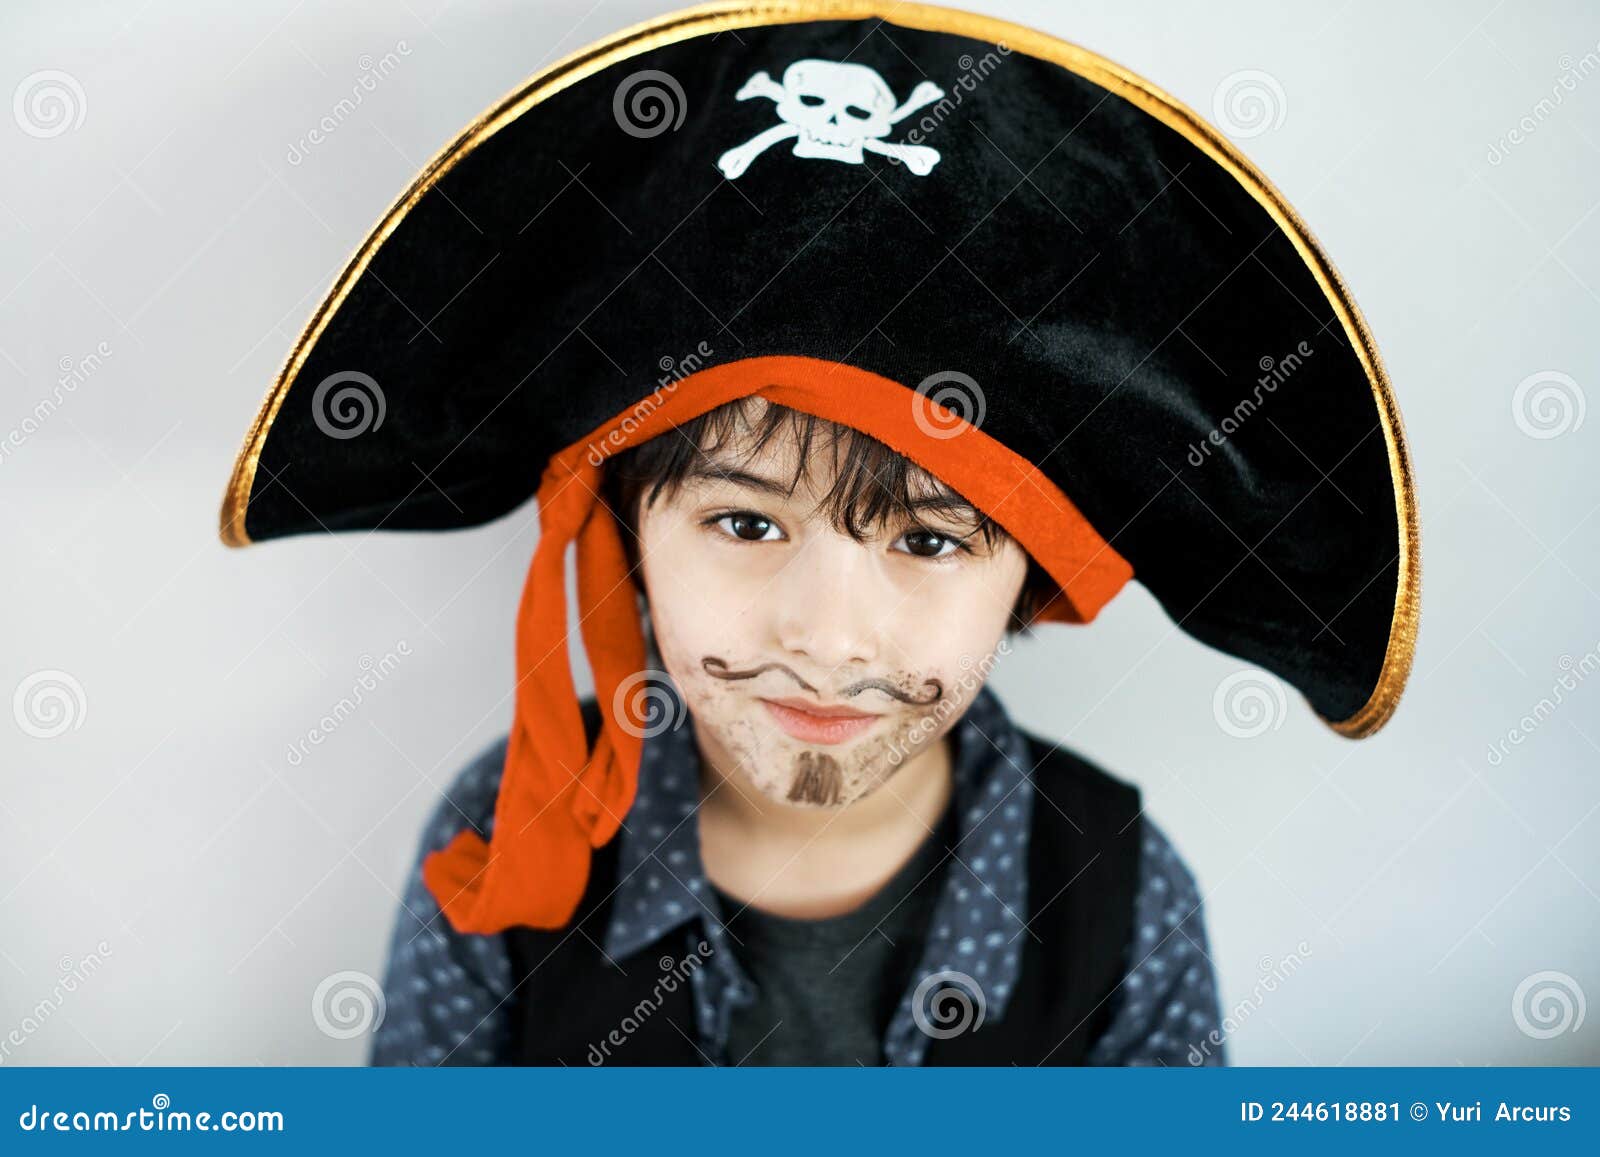 Im El Capitán De Esta Nave. Foto De Un Niño Vestido Con Un Traje De Pirata  Contra Un Fondo Blanco. Imagen de archivo - Imagen de partido, mirando:  244618881